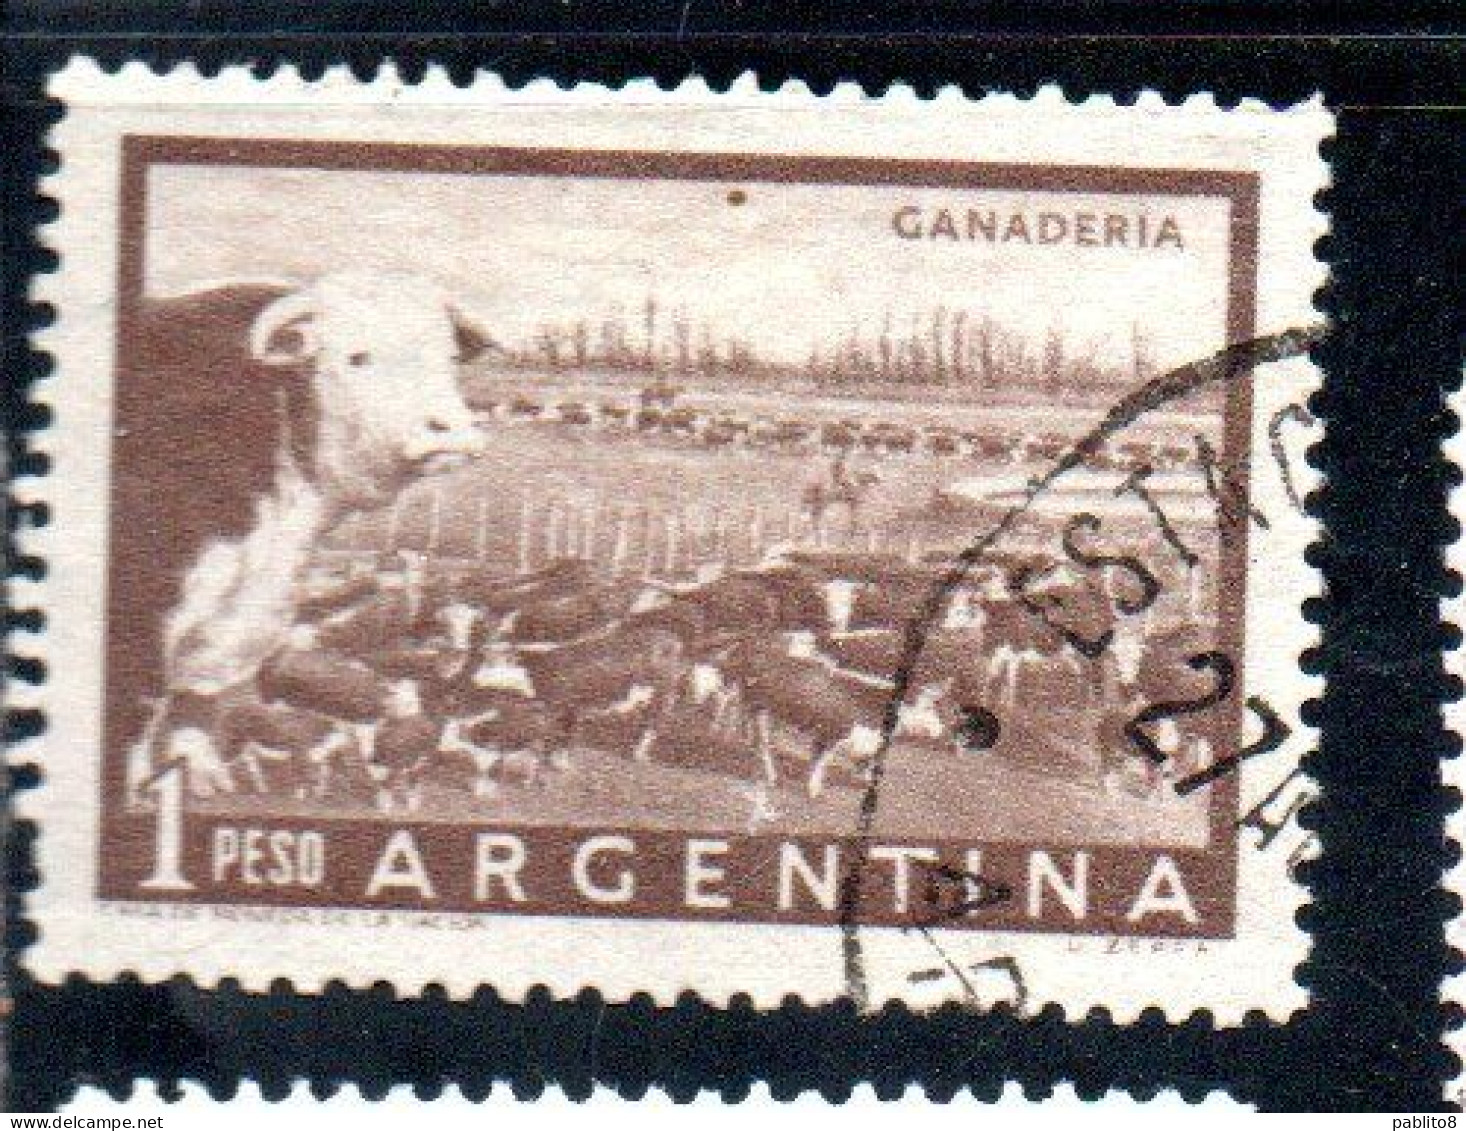 ARGENTINA 1954 1959 1958 CATTLE RANCH GANADERIA 1p USED USADO OBLITERE' - Gebraucht